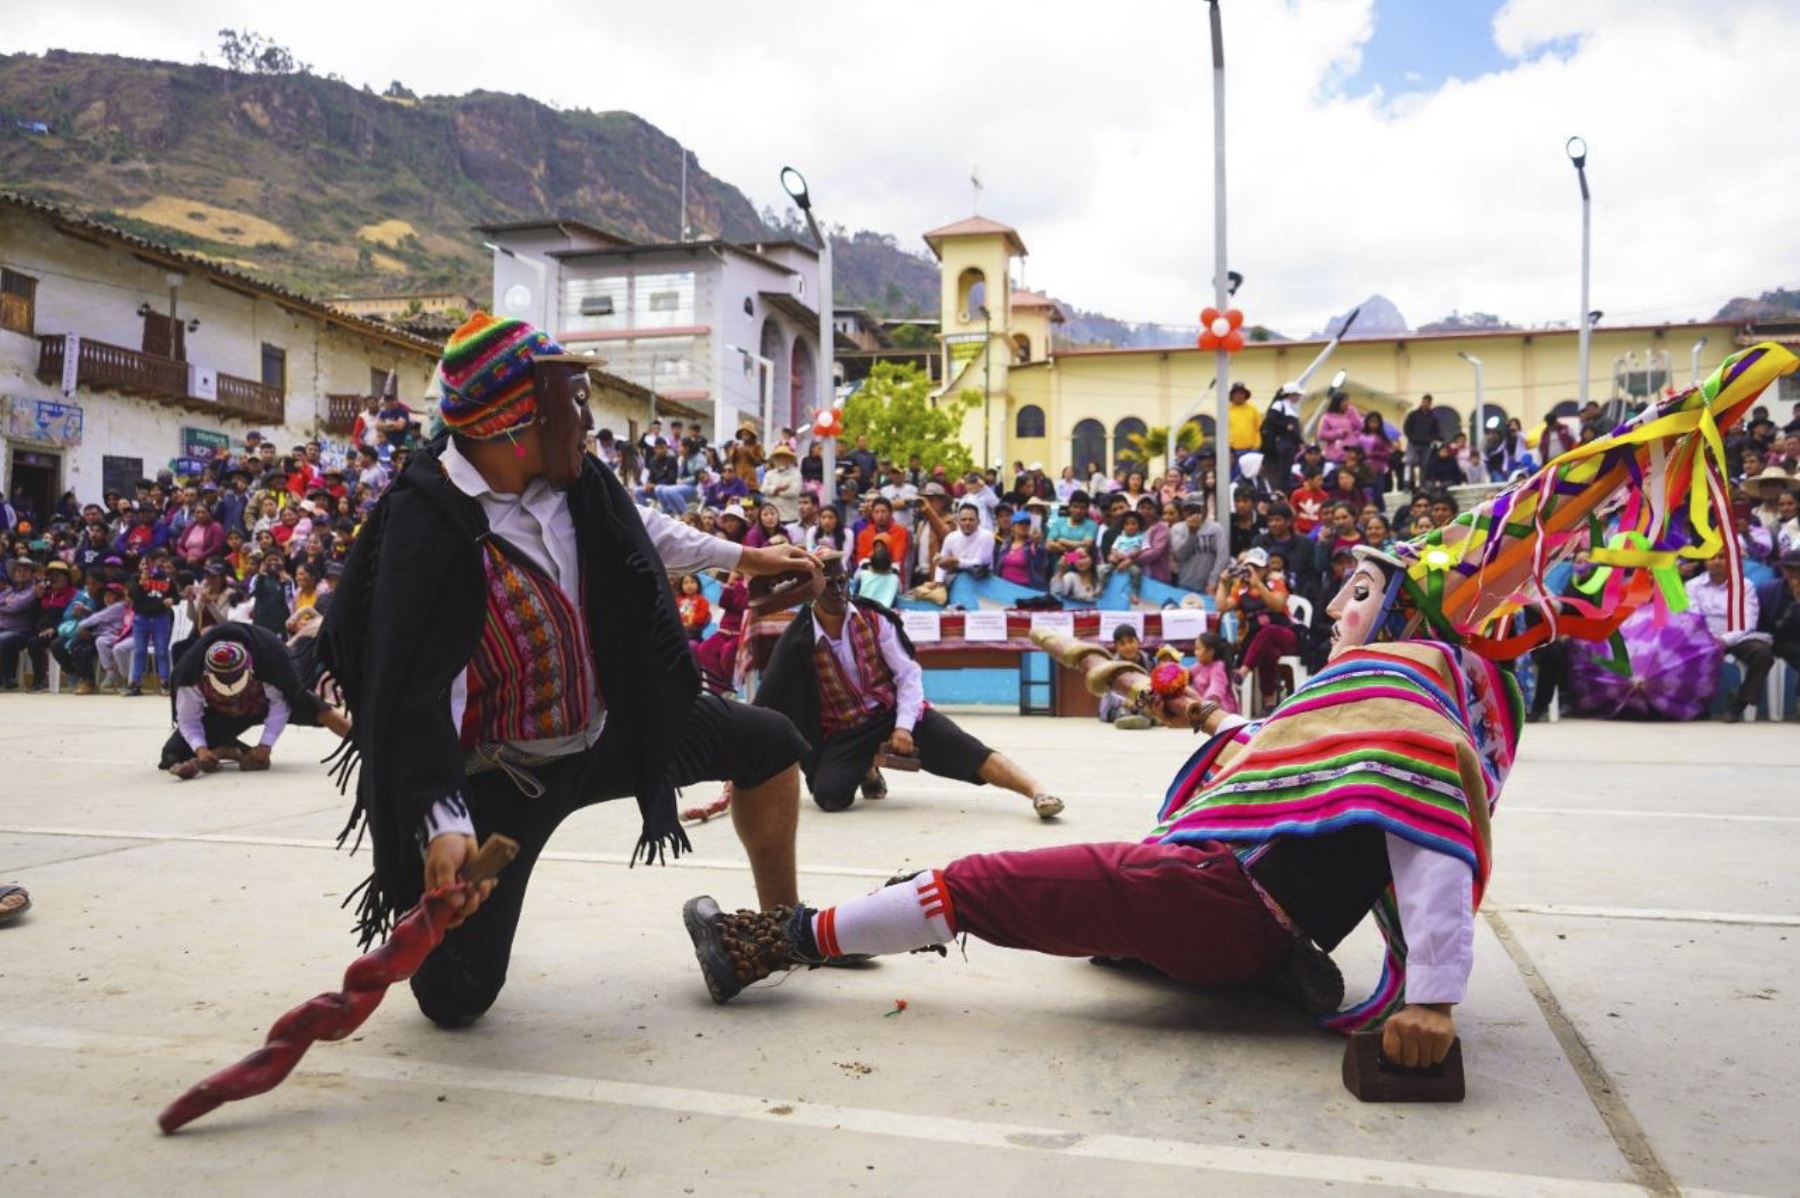 La danza de Los Waris de Chillia representa la resistencia y reivindicación de la población originaria frente a la opresión. Foto: ANDINA/Mincul